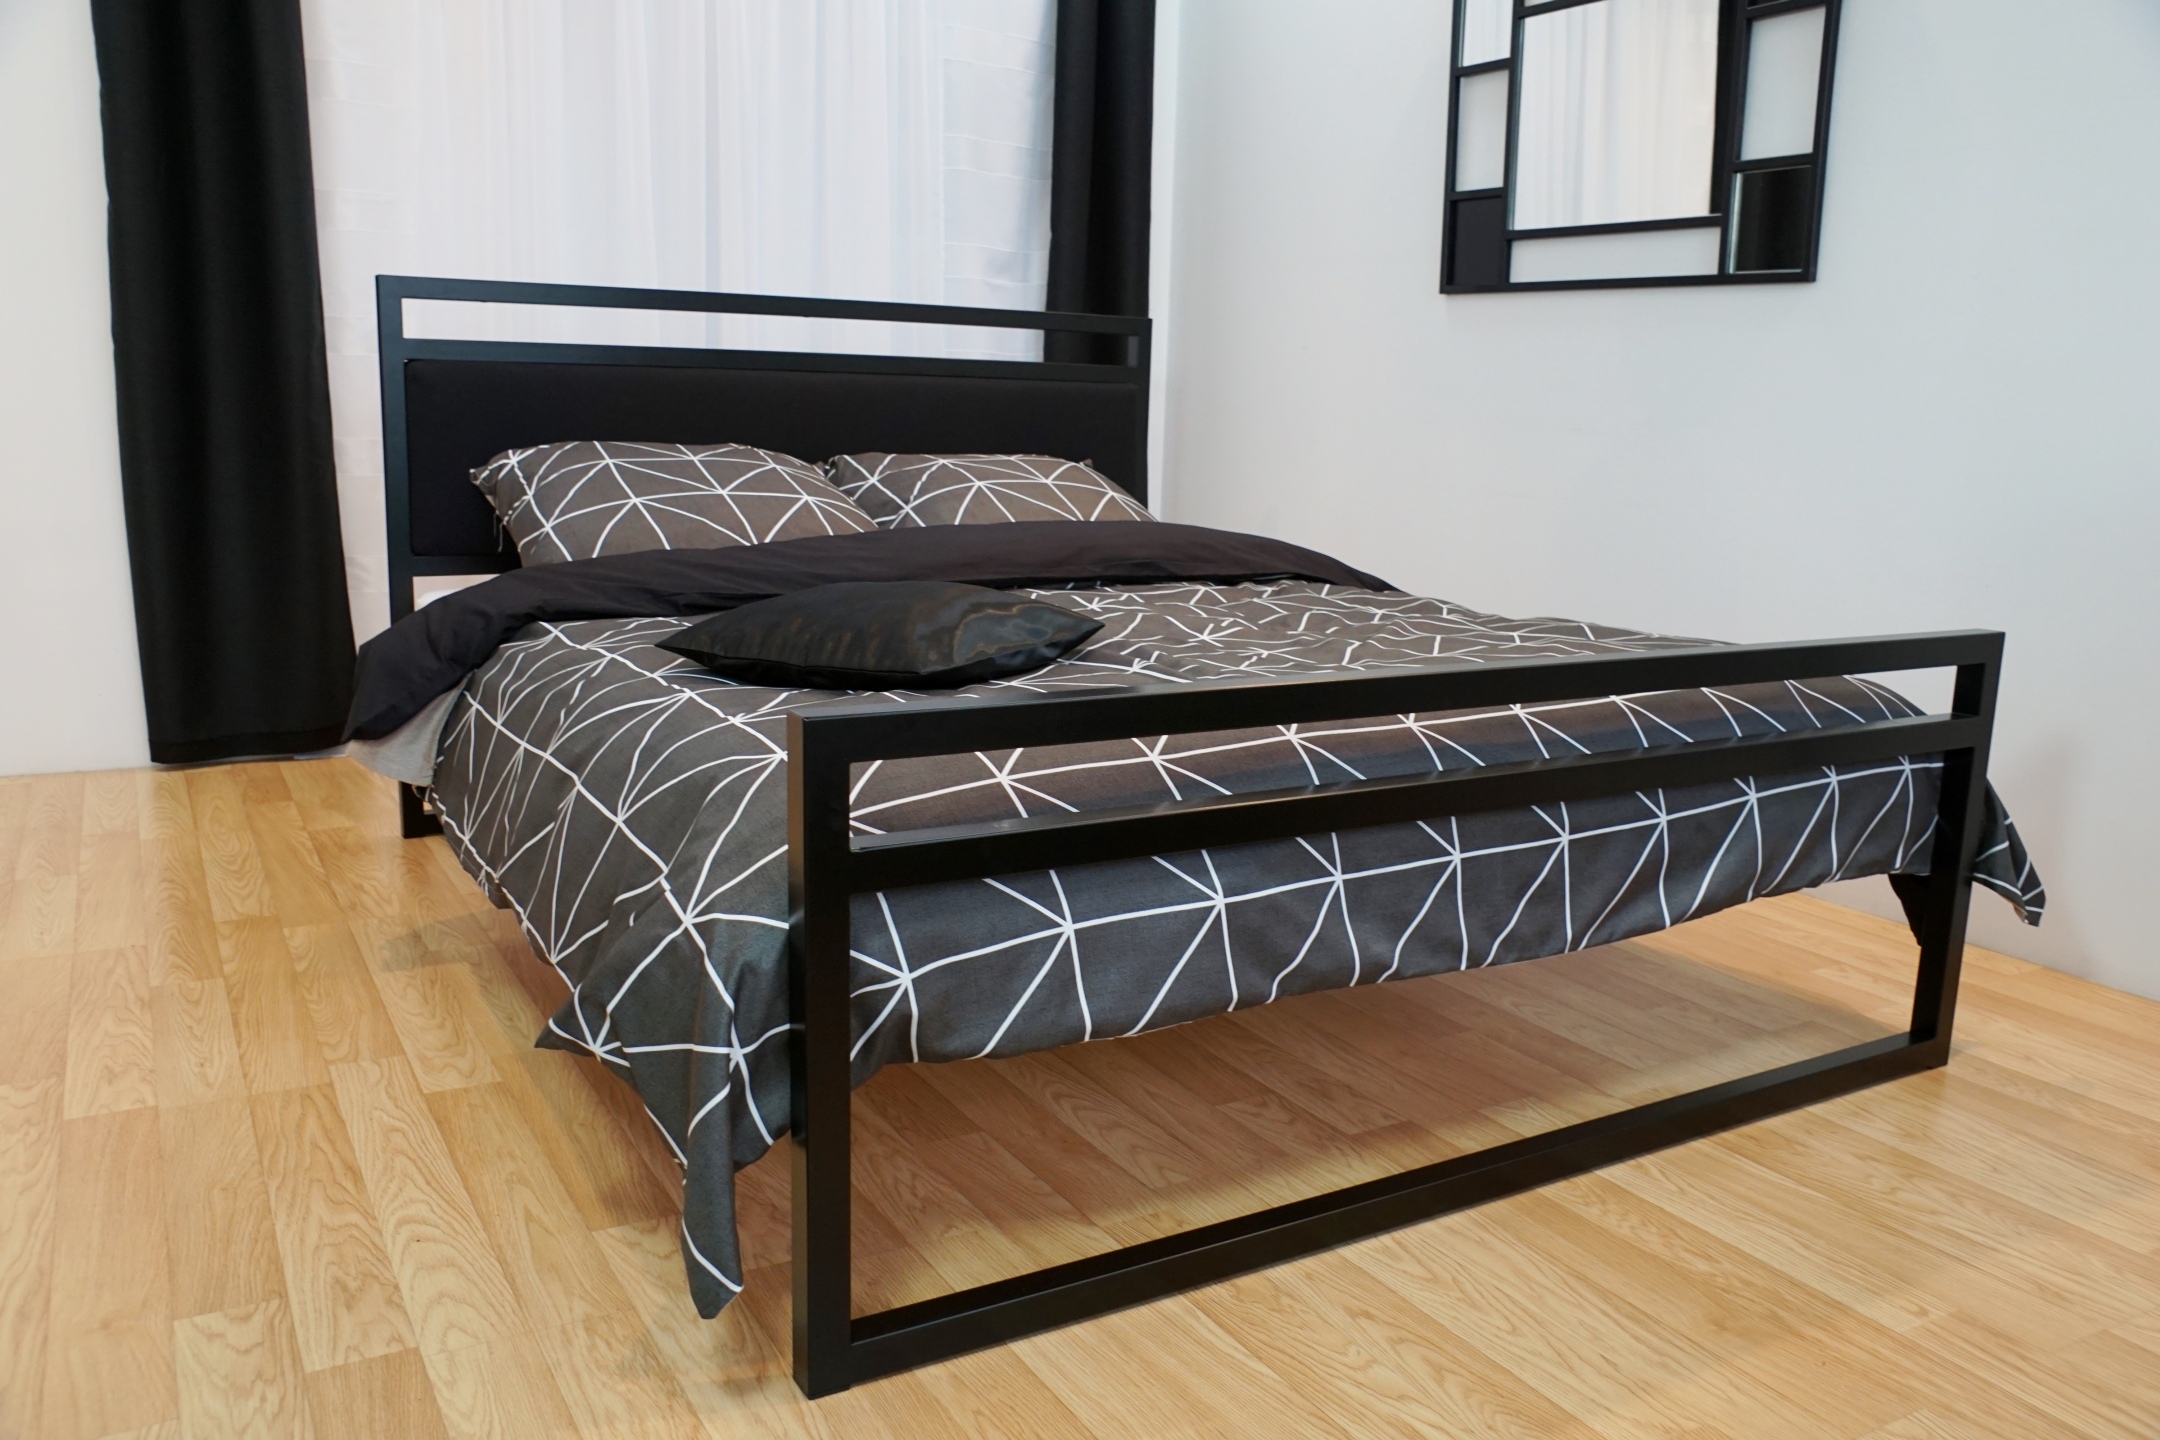 Łóżko loft, czyli sposób na stworzenie nowoczesnego wnętrza!